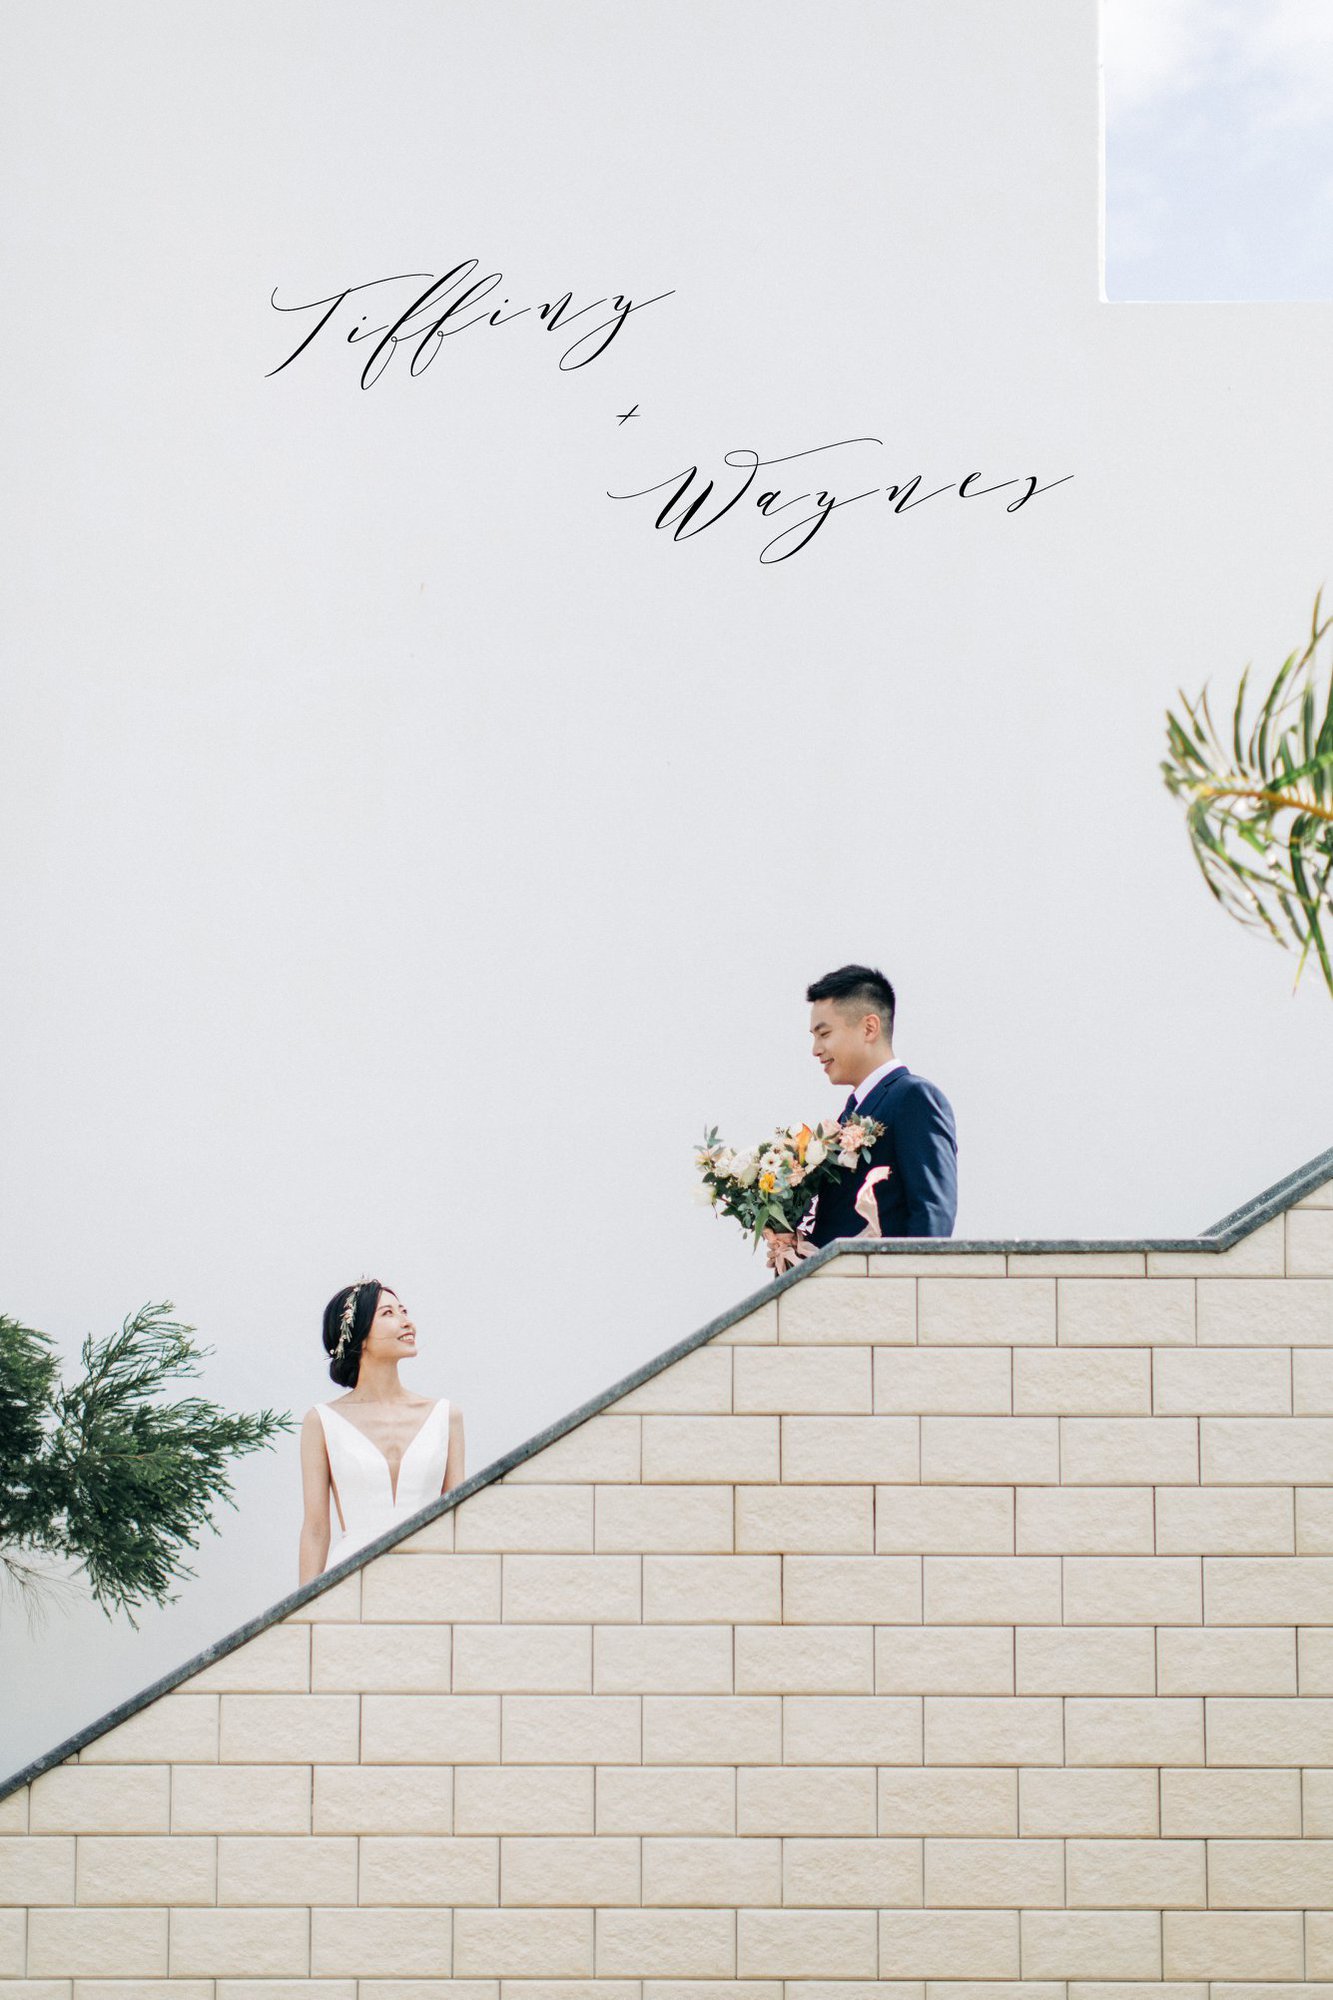 墾丁嵐翎白砂度假莊園婚禮 | Tiffiny + Yi Wedding | 美式婚禮攝影